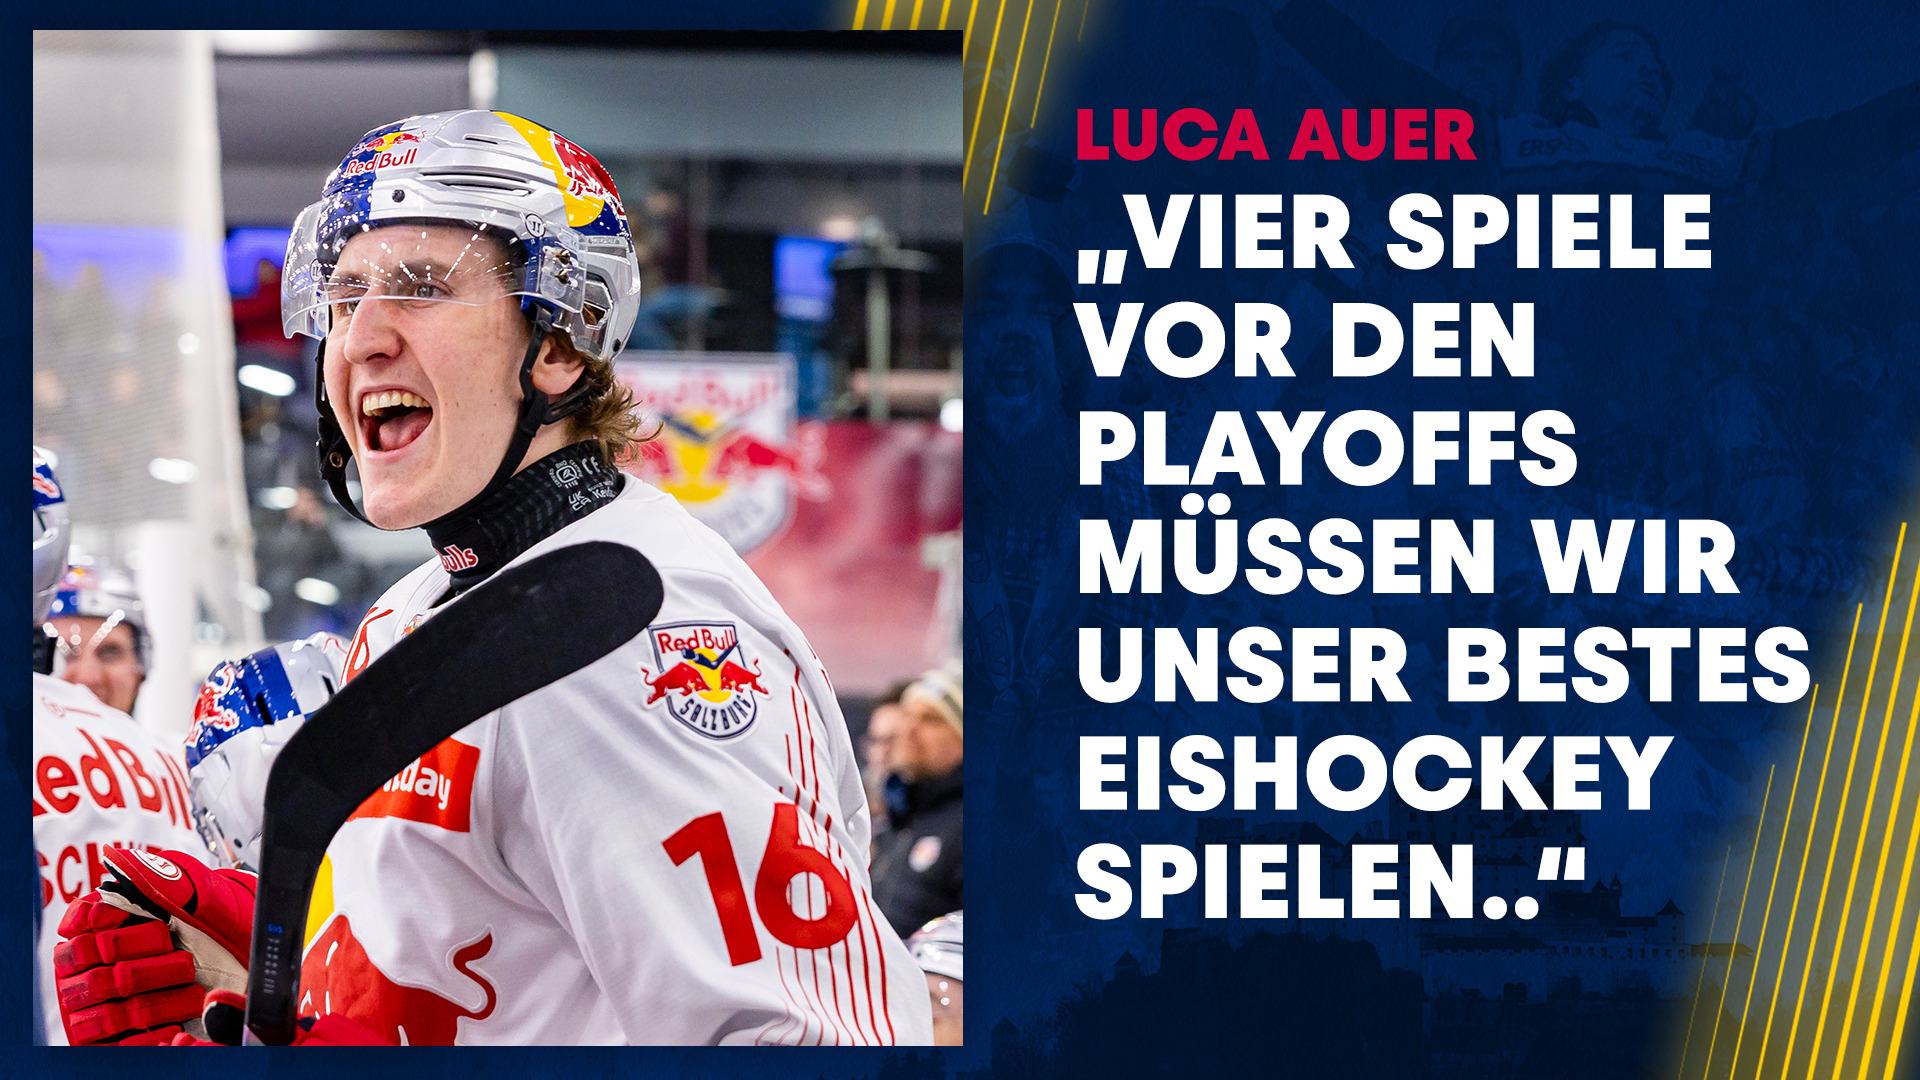 Statement: Luca Auer